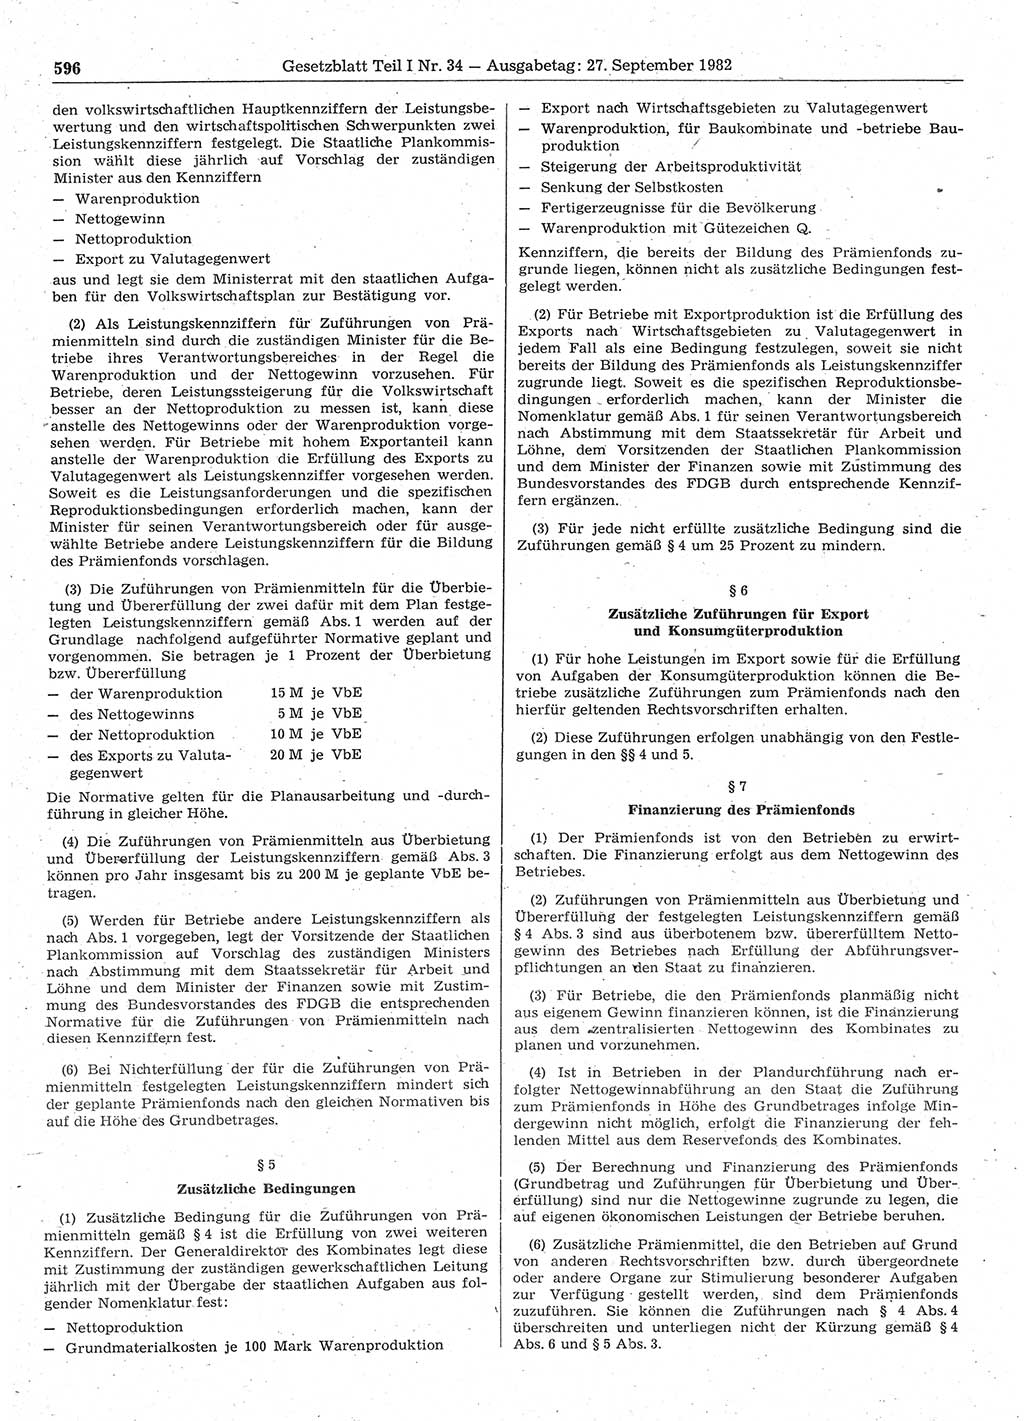 Gesetzblatt (GBl.) der Deutschen Demokratischen Republik (DDR) Teil Ⅰ 1982, Seite 596 (GBl. DDR Ⅰ 1982, S. 596)